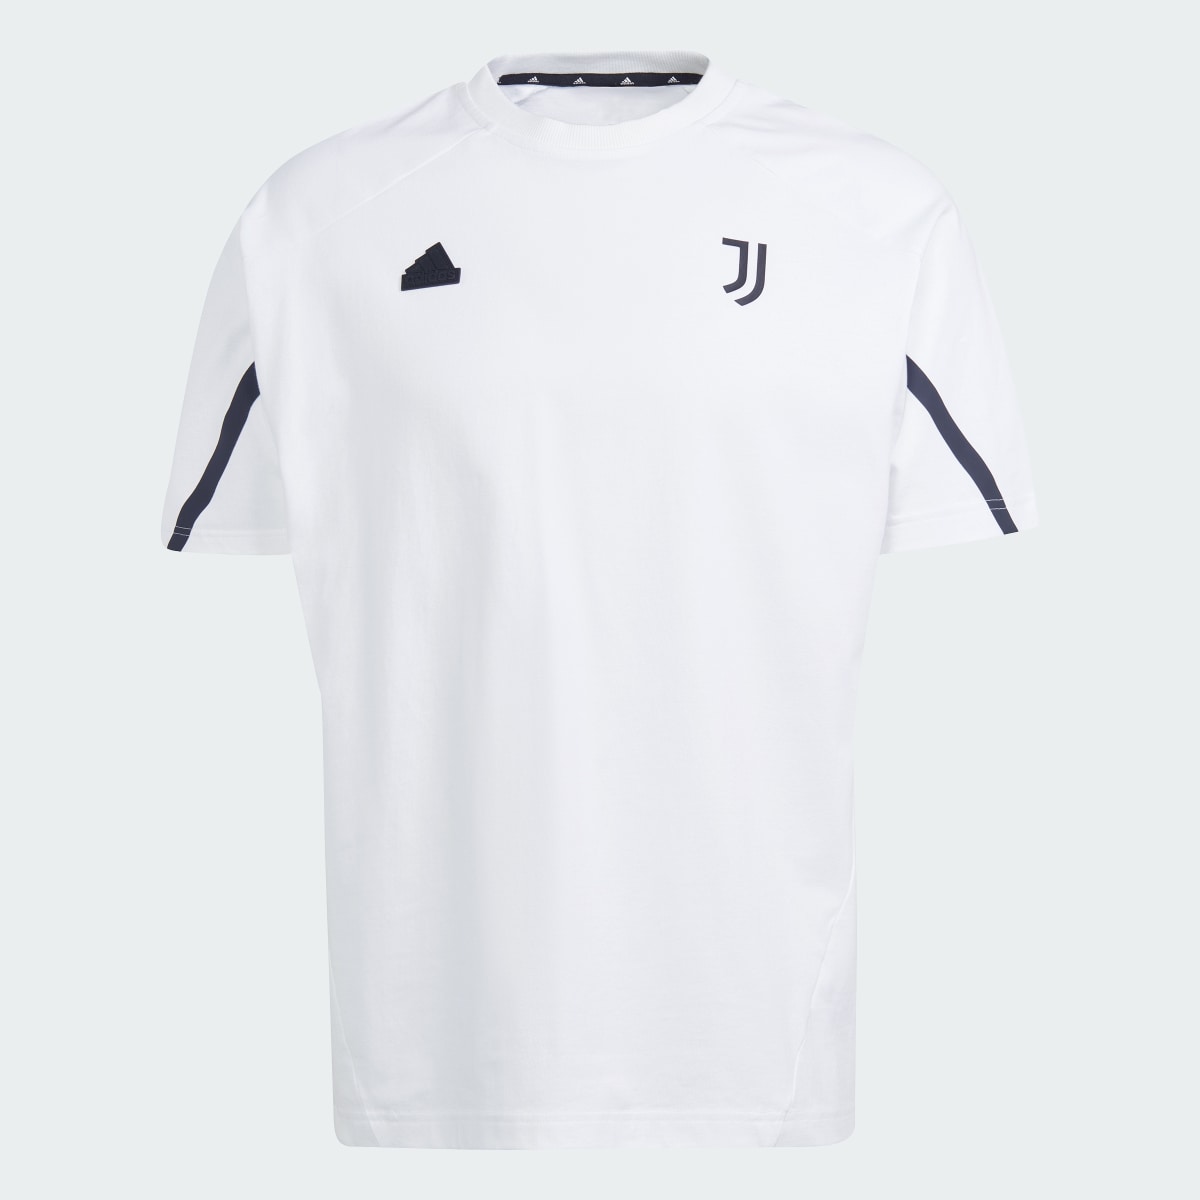 Adidas T-shirt Designed for Gameday da Juventus. 5